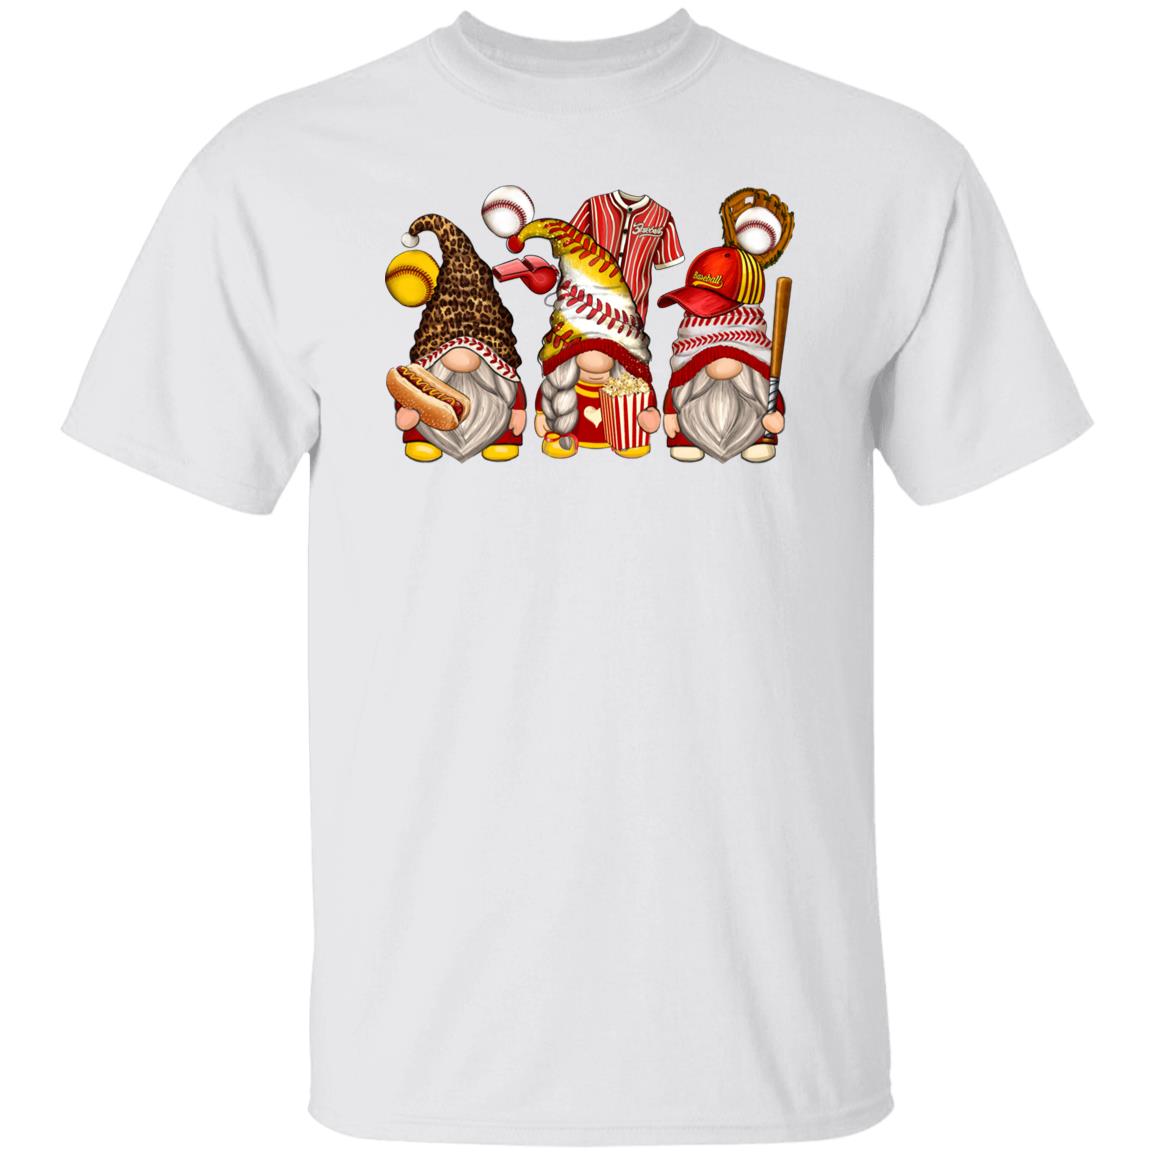 Baseball and softball Gnomes Unisex shirt softball player Christmas gift White Sand-Family-Gift-Planet